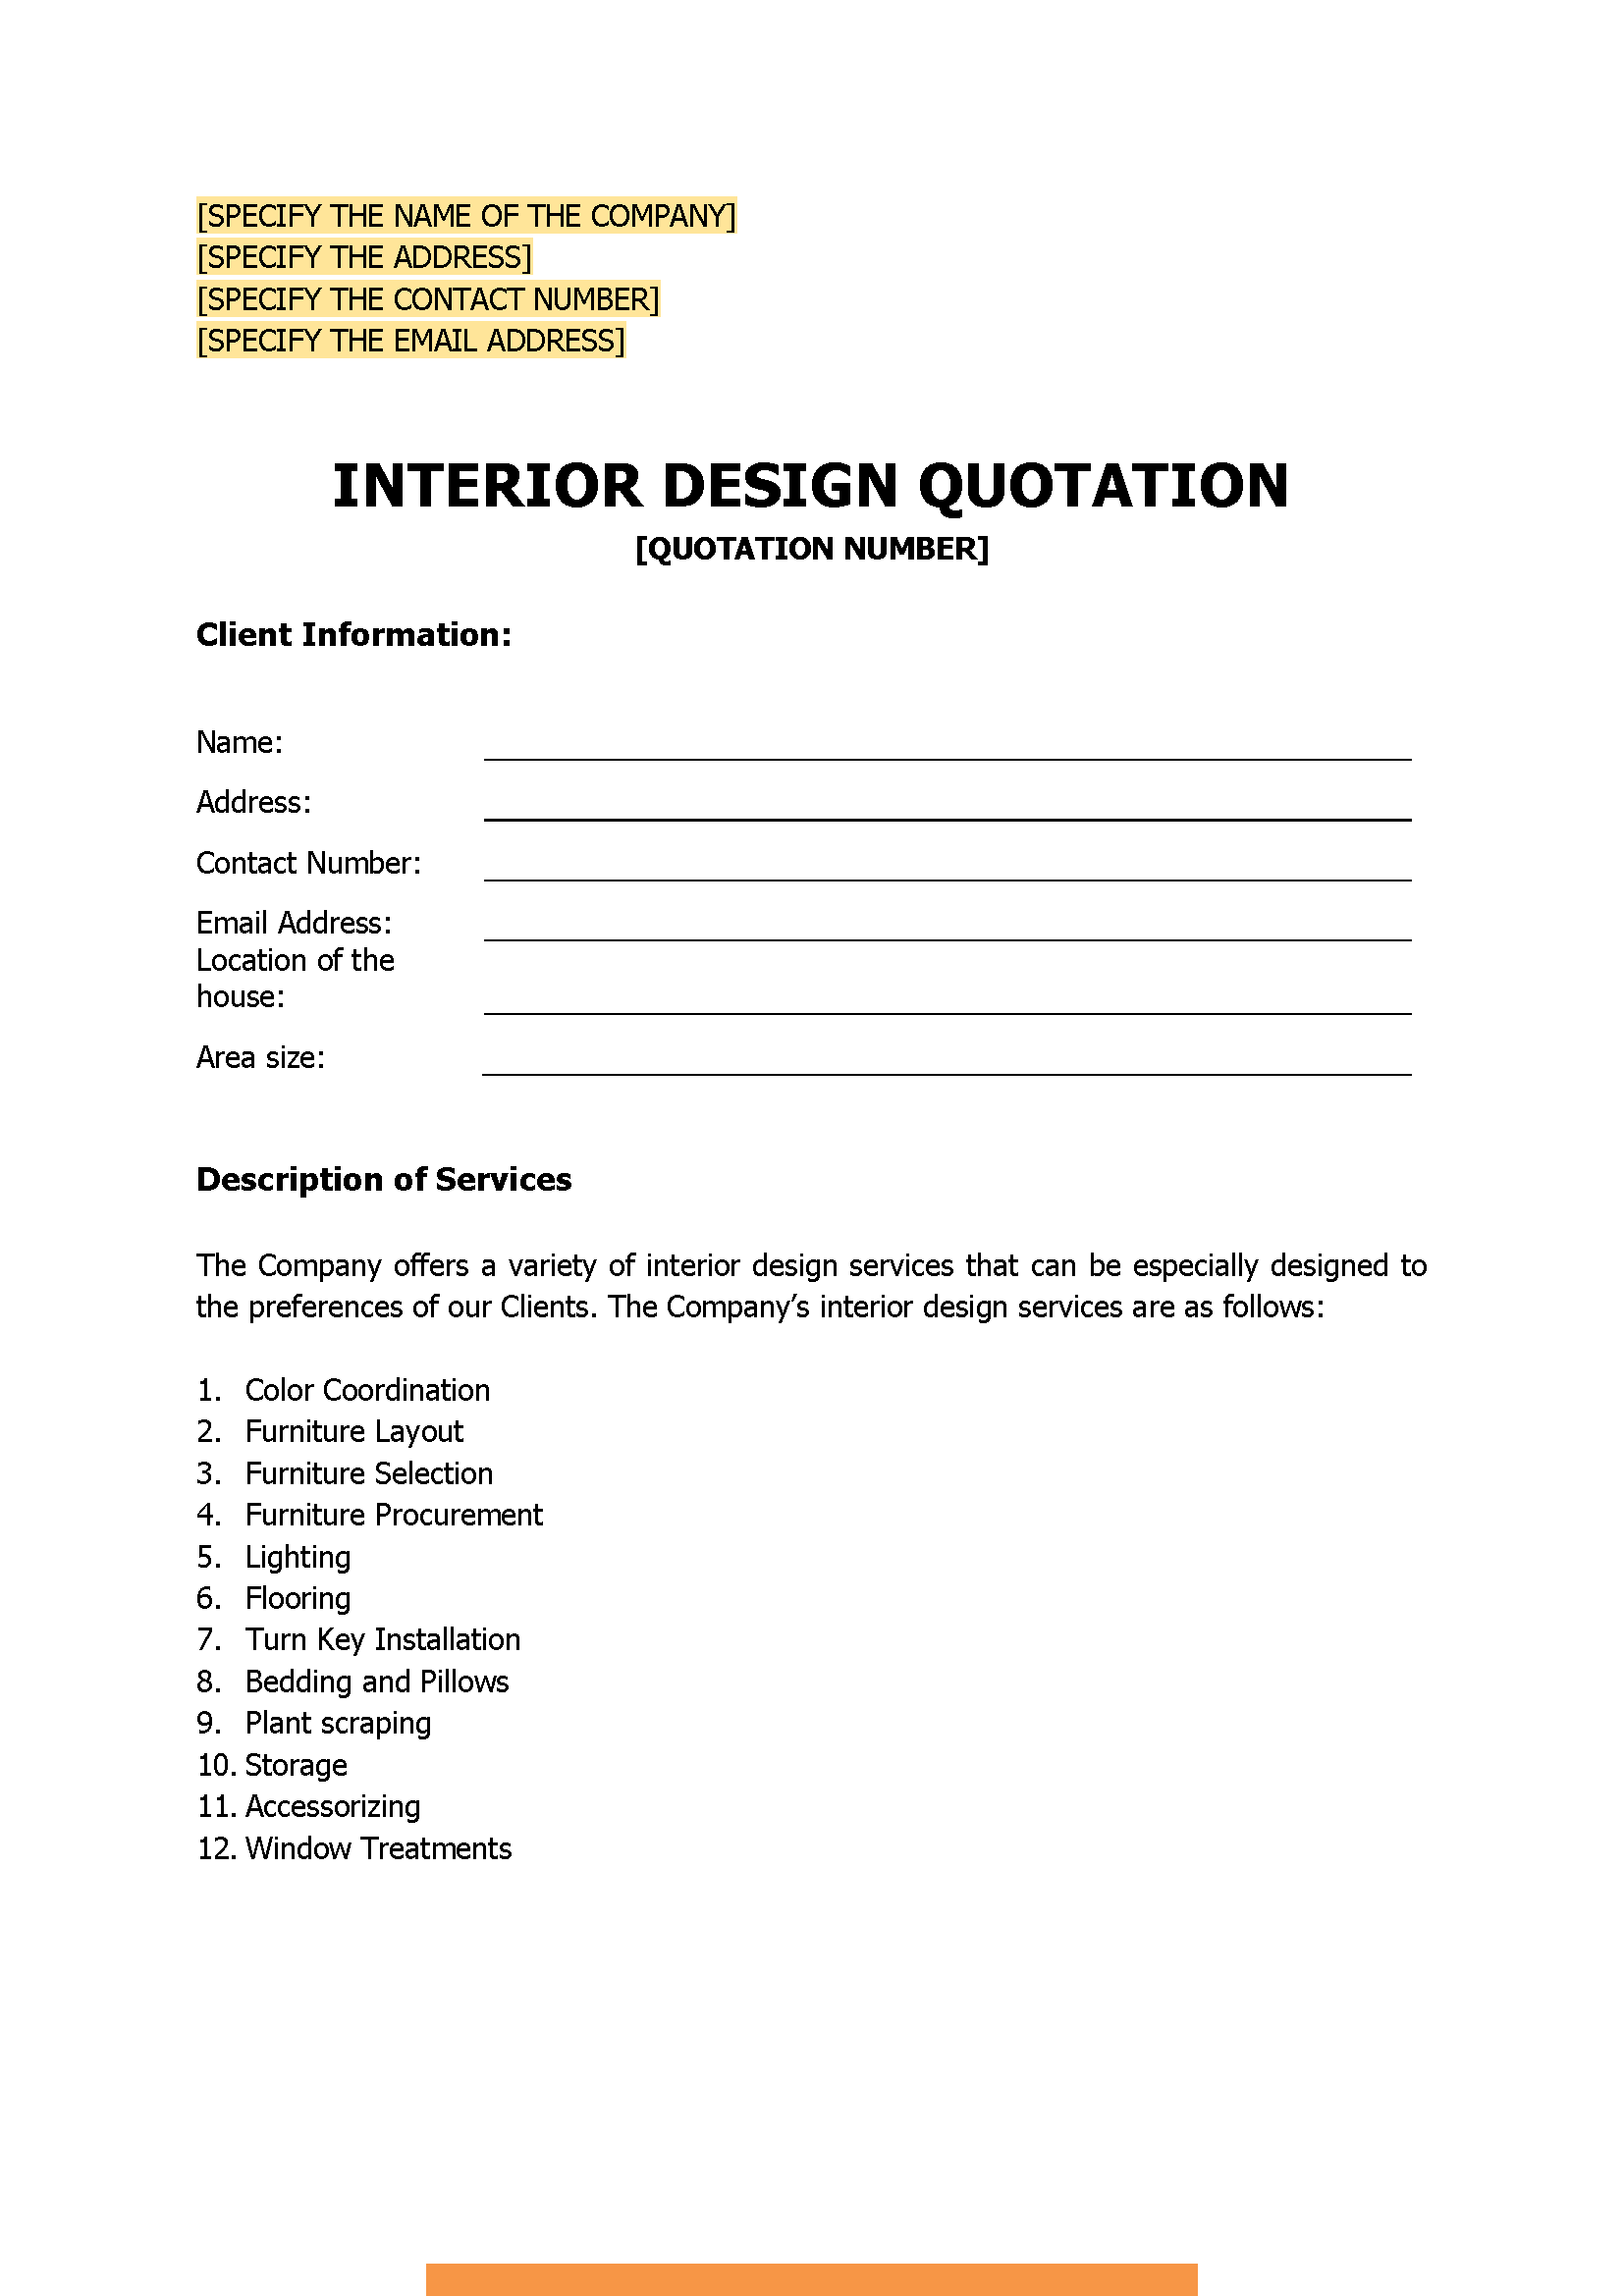 Interior Design Quotation